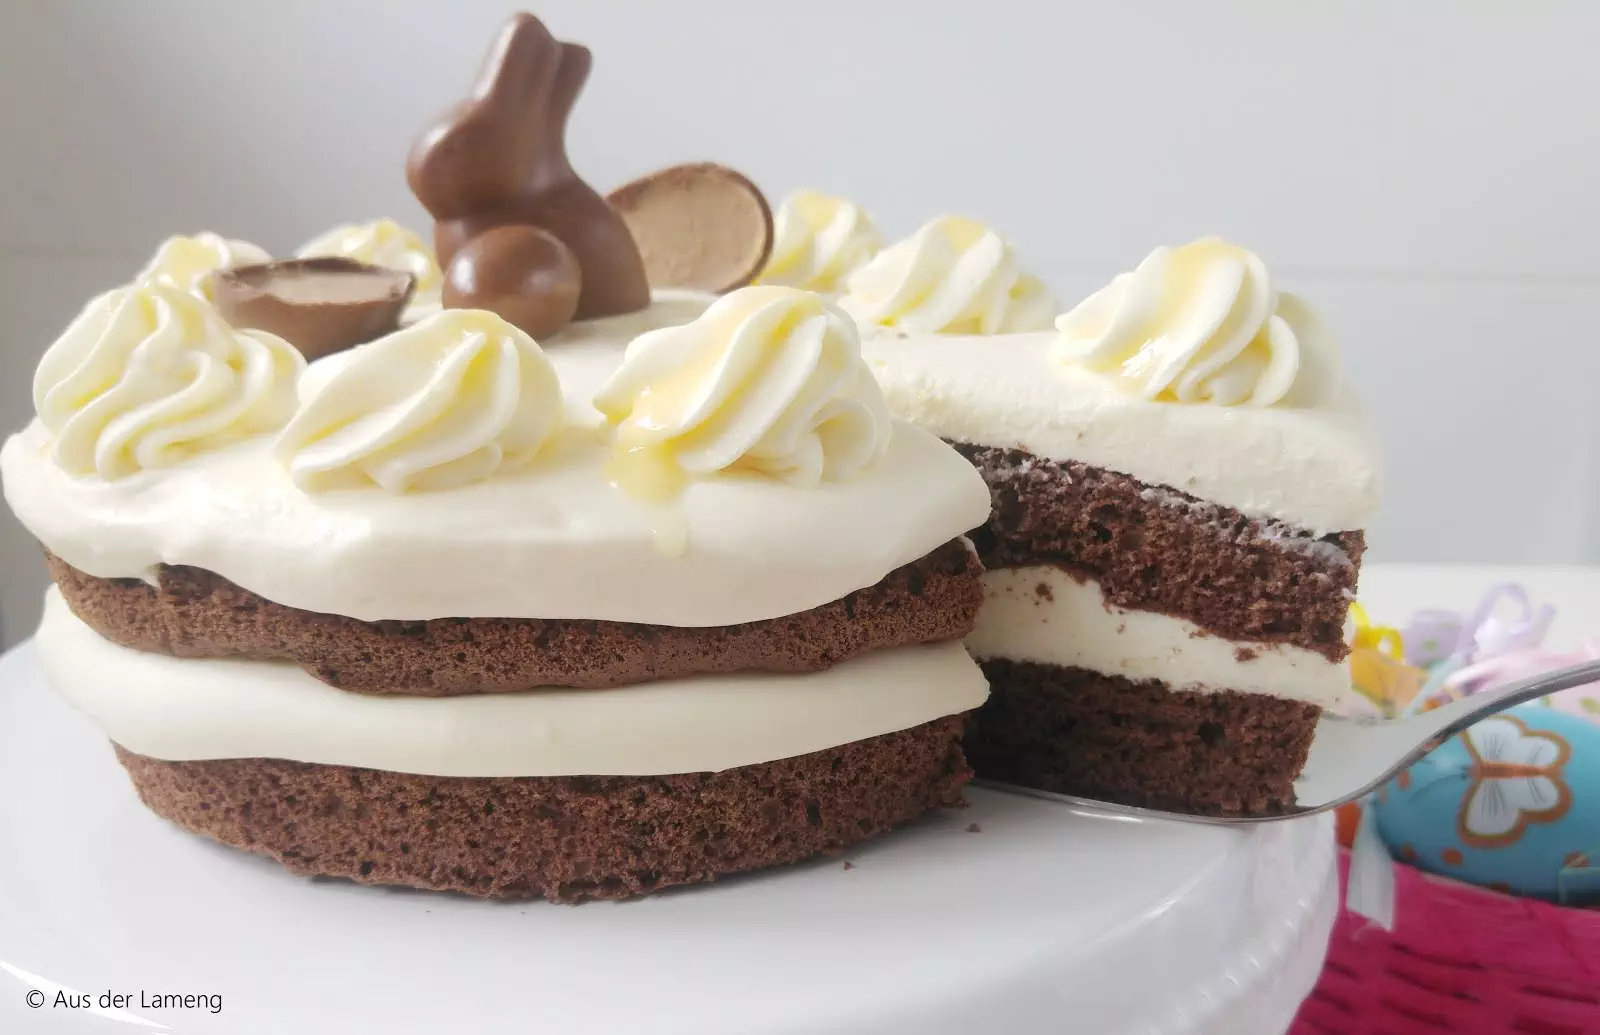 Süßer Schoko-Naked-Cake mit Eierlikör-Sahne | Gastbeitrag von Aus der Lameng | Osterkooperation mit Gewinnspiel | Sugarprincess 2019